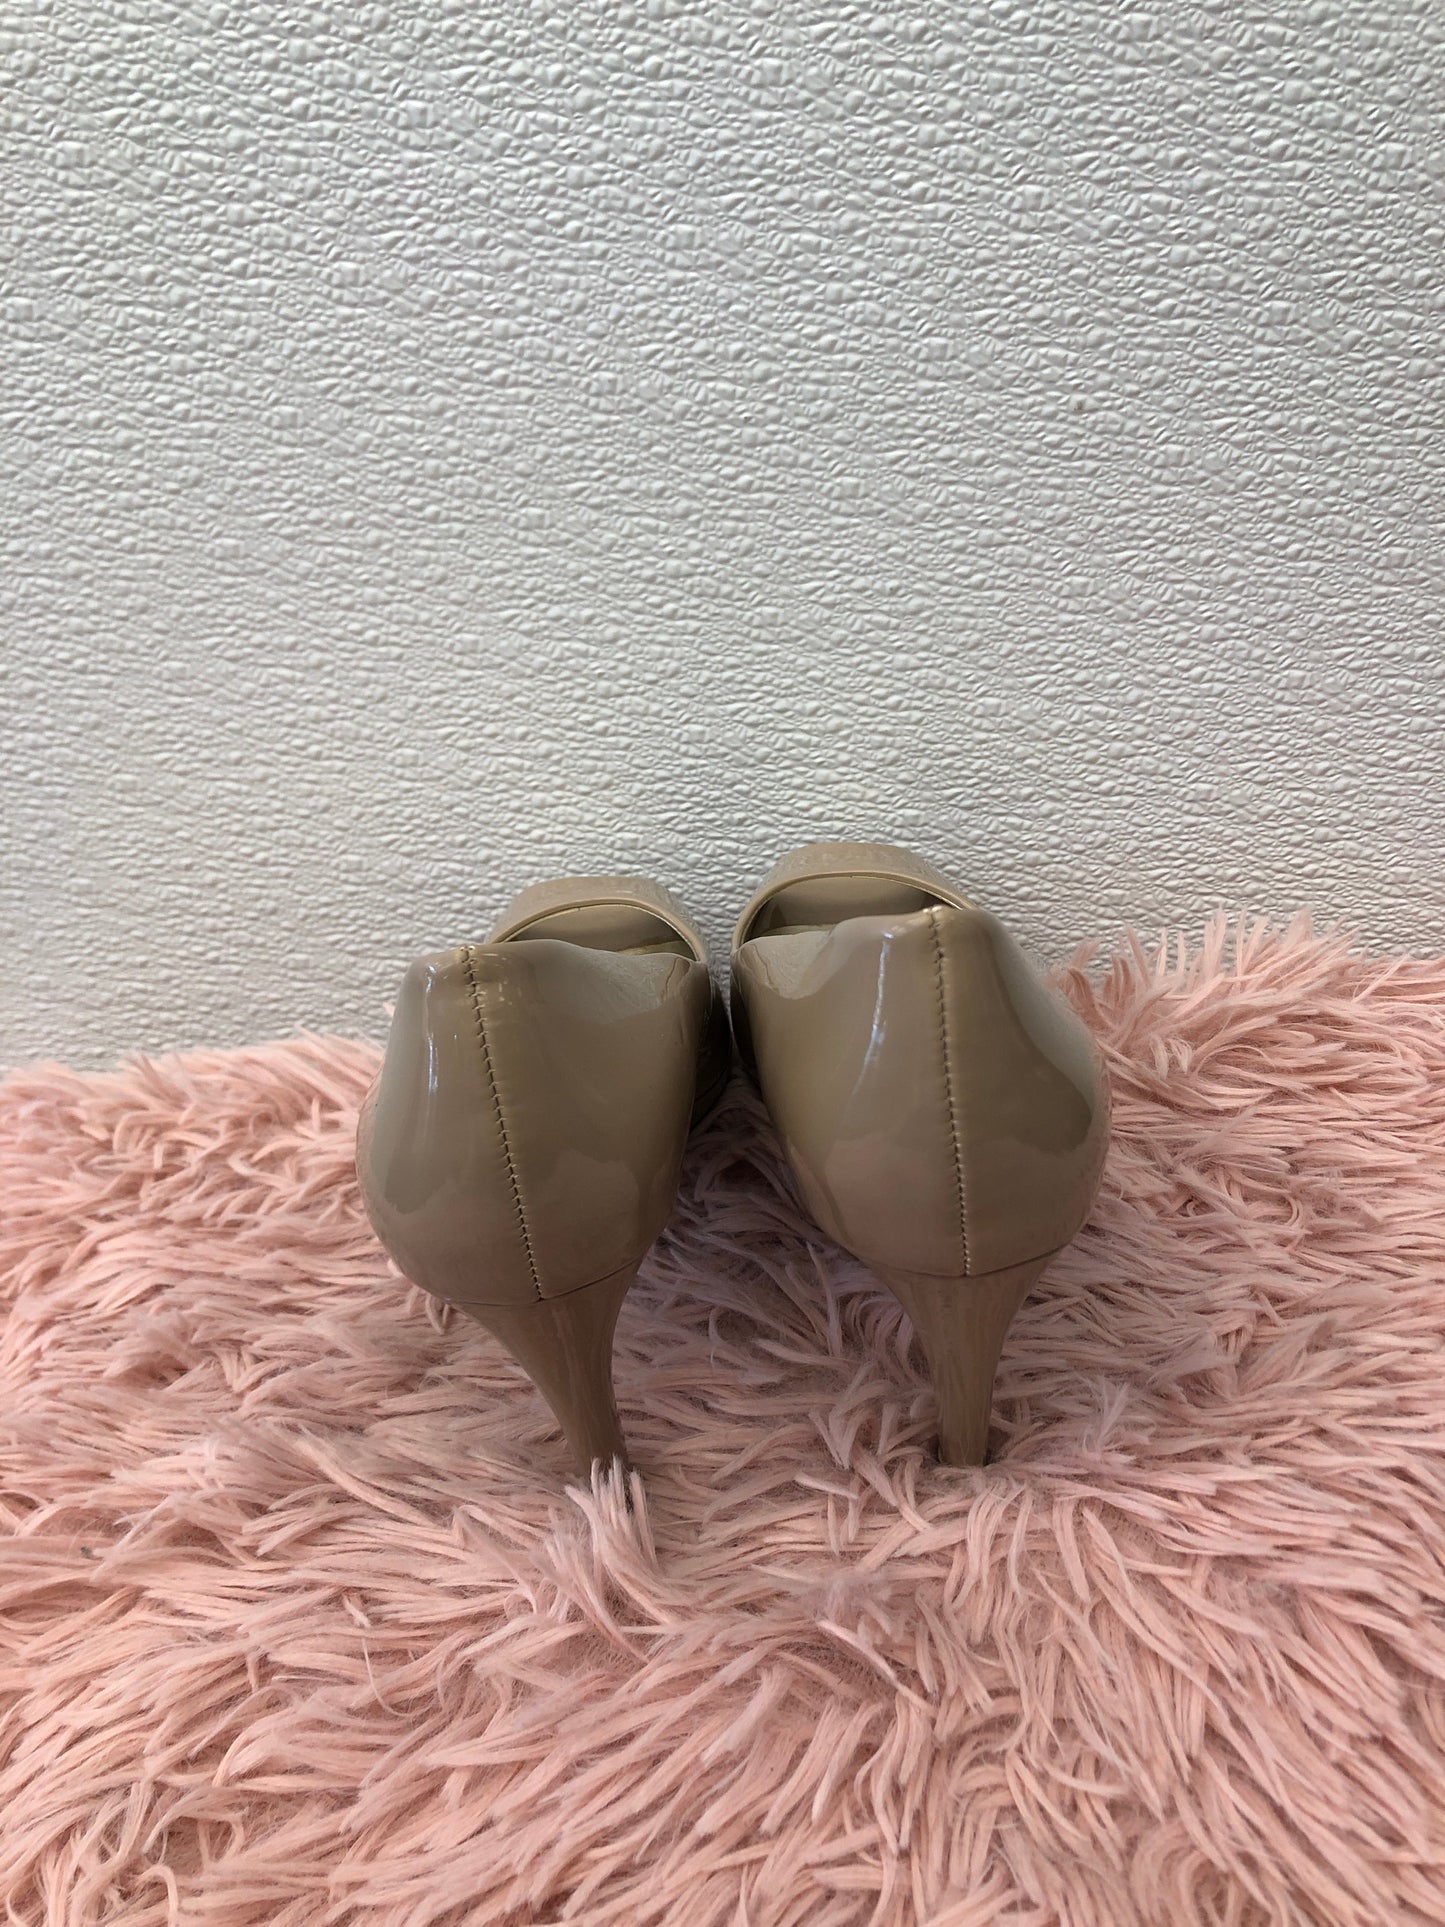 Nude Shoes Heels Stiletto Bandolino, Size 6.5